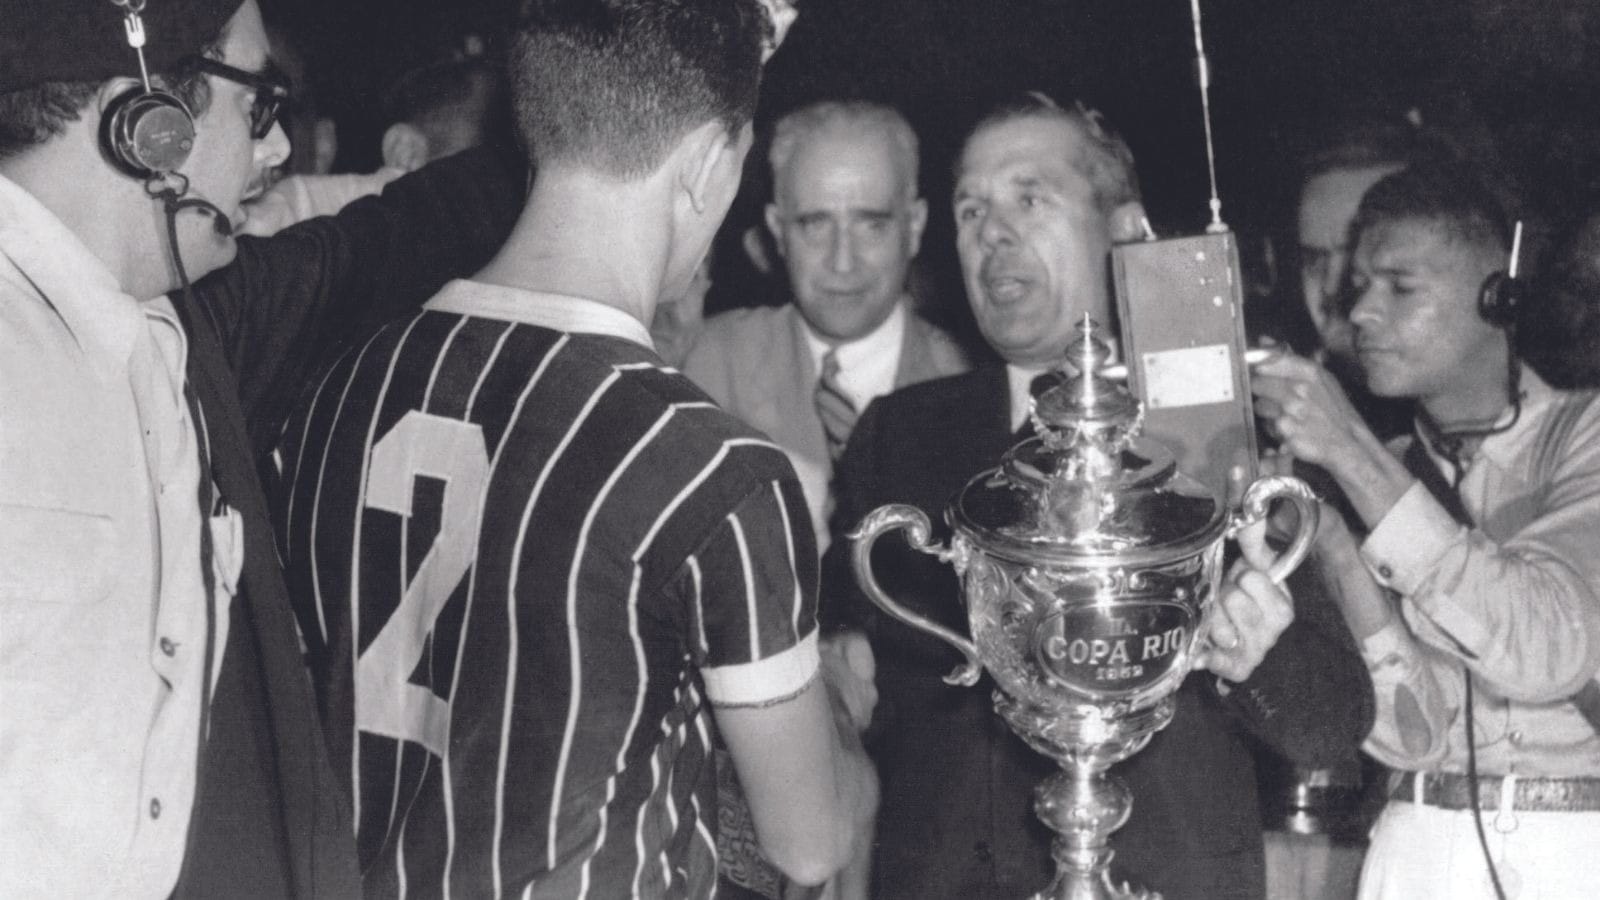 Relembre a Copa Rio de 1952, título que Fluminense busca equiparar